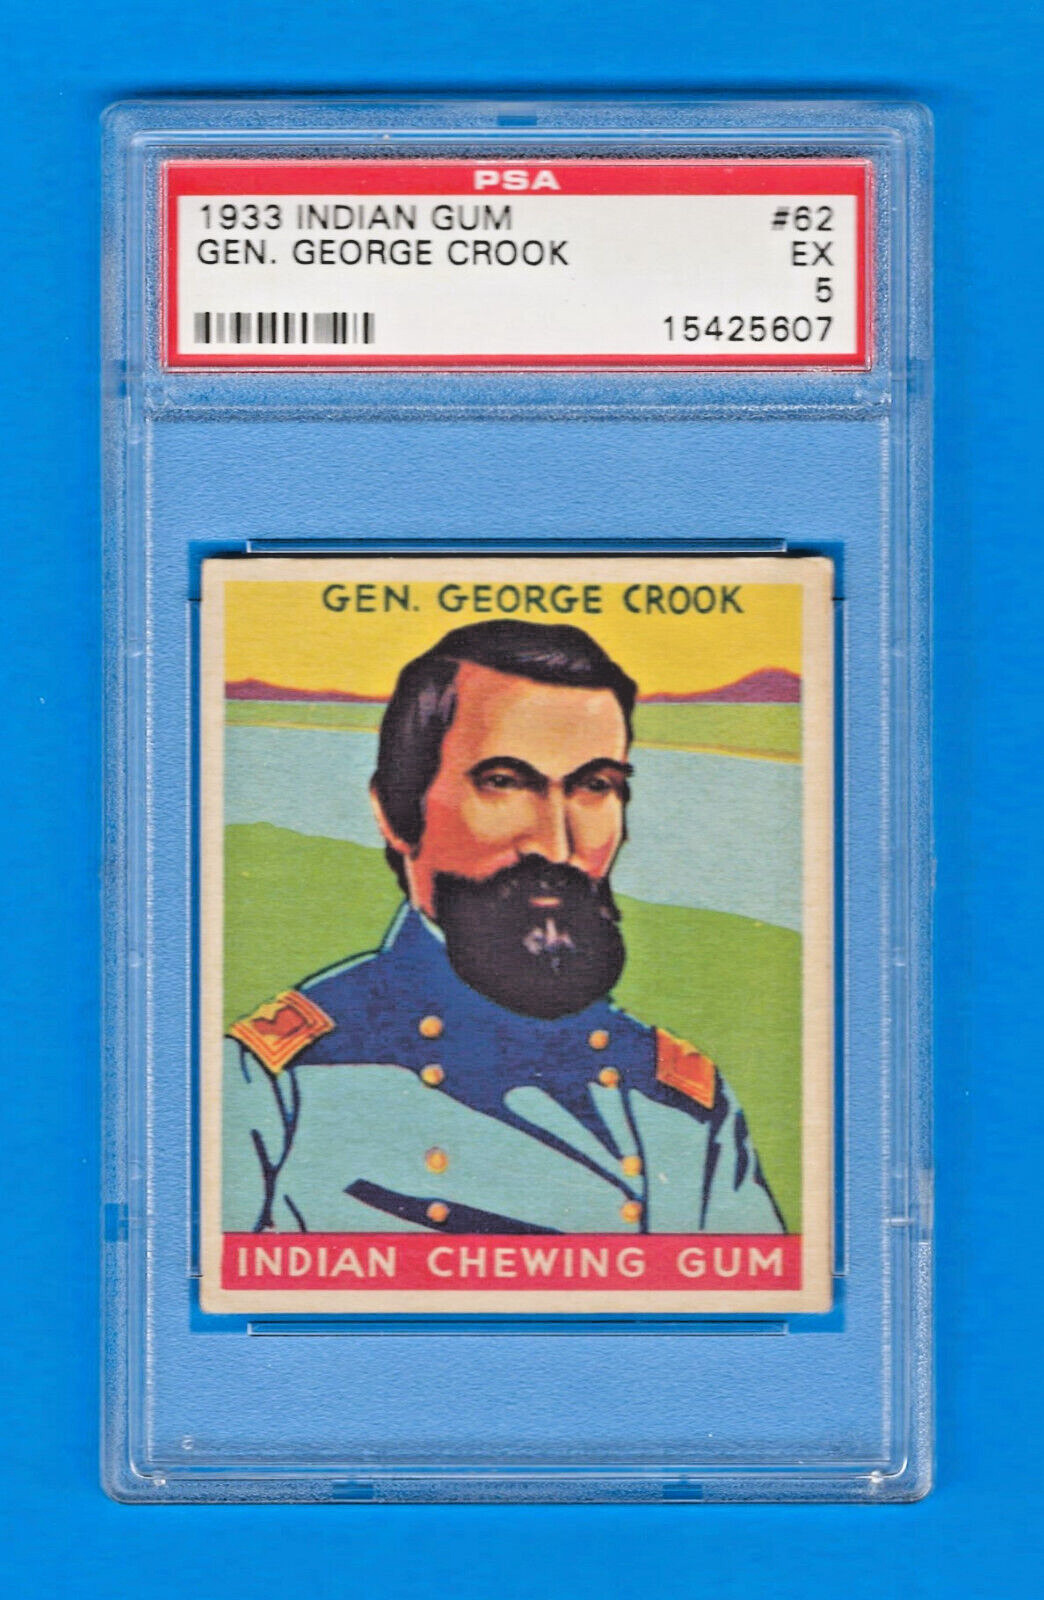 1933 R73 Goudey Indian Gum Card #62 - GEN. GEORGE CROOK - Series 96 - PSA 5 - EX